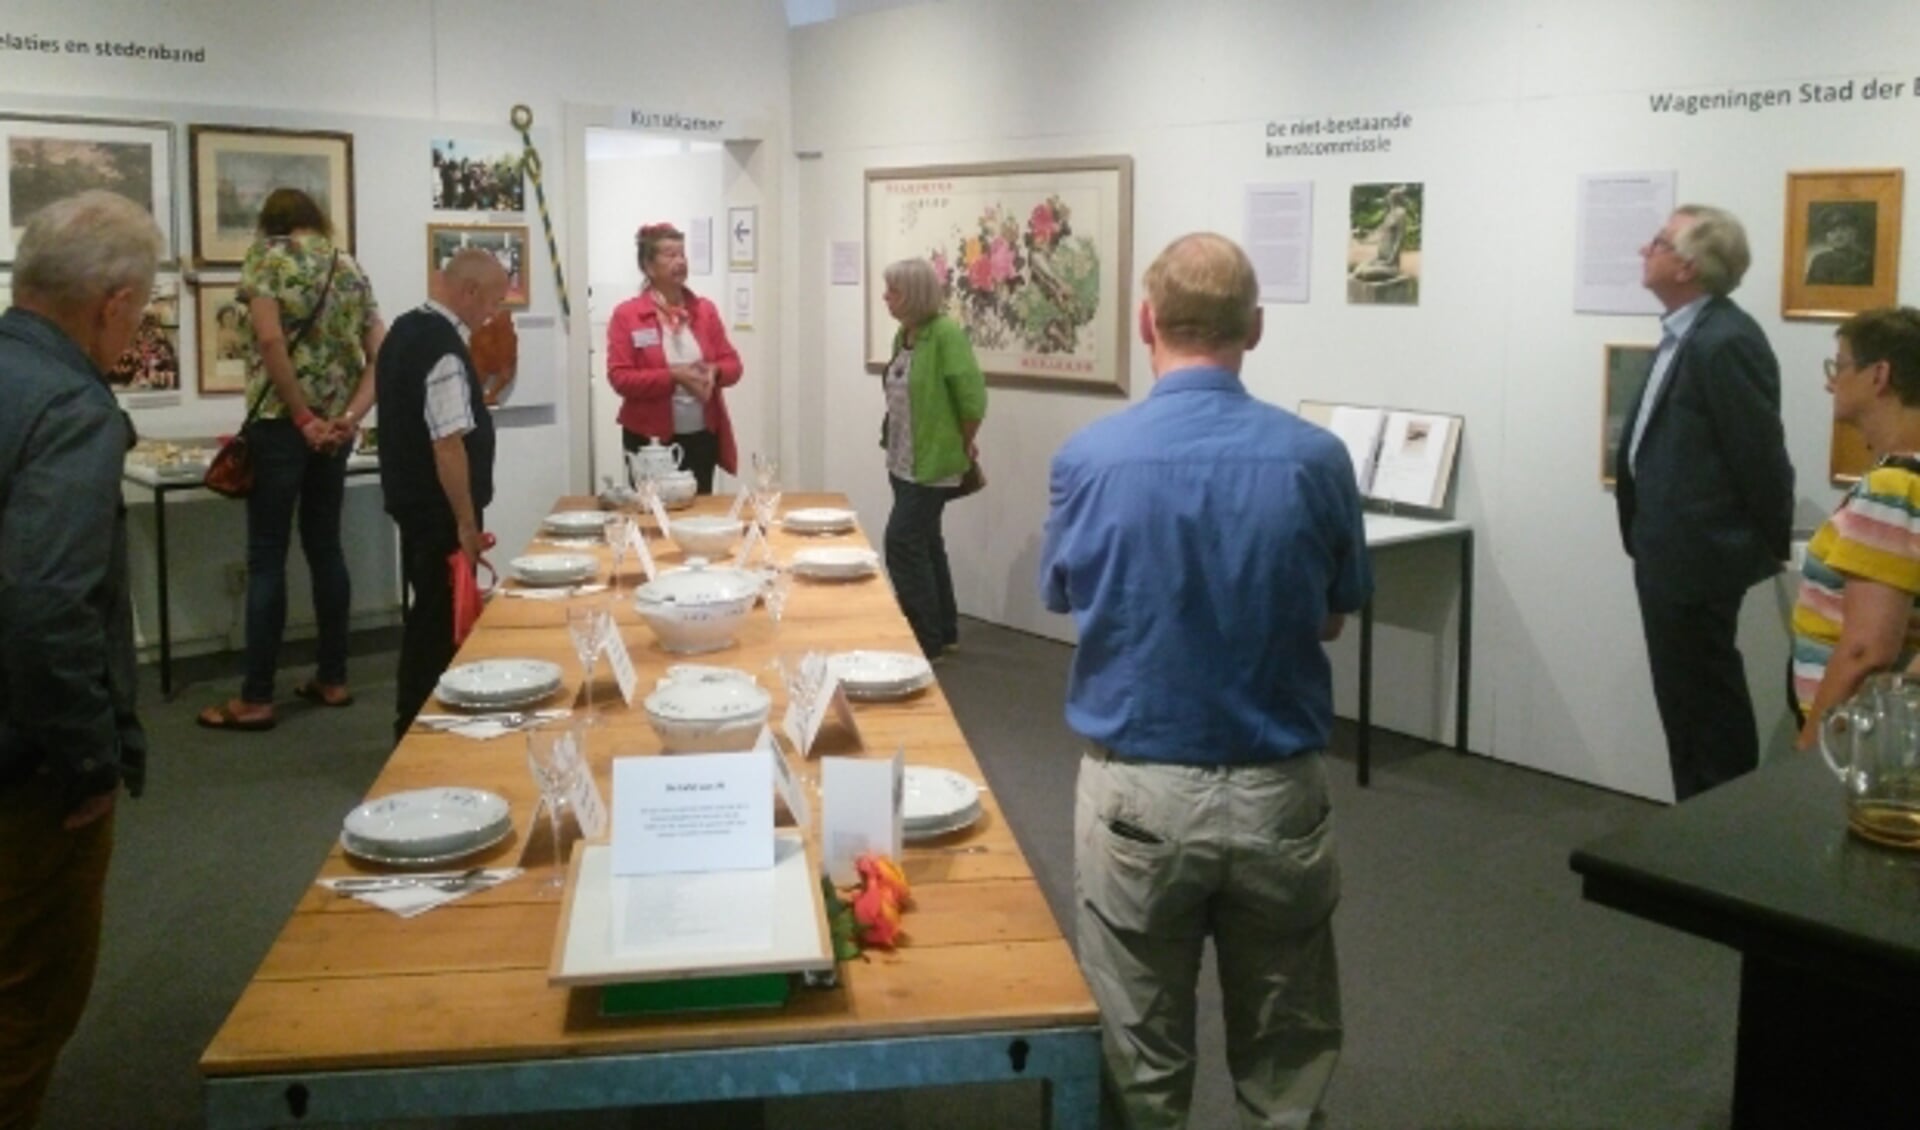 Geert van Rumund leidt bezoekers rond in eigen expositie. 